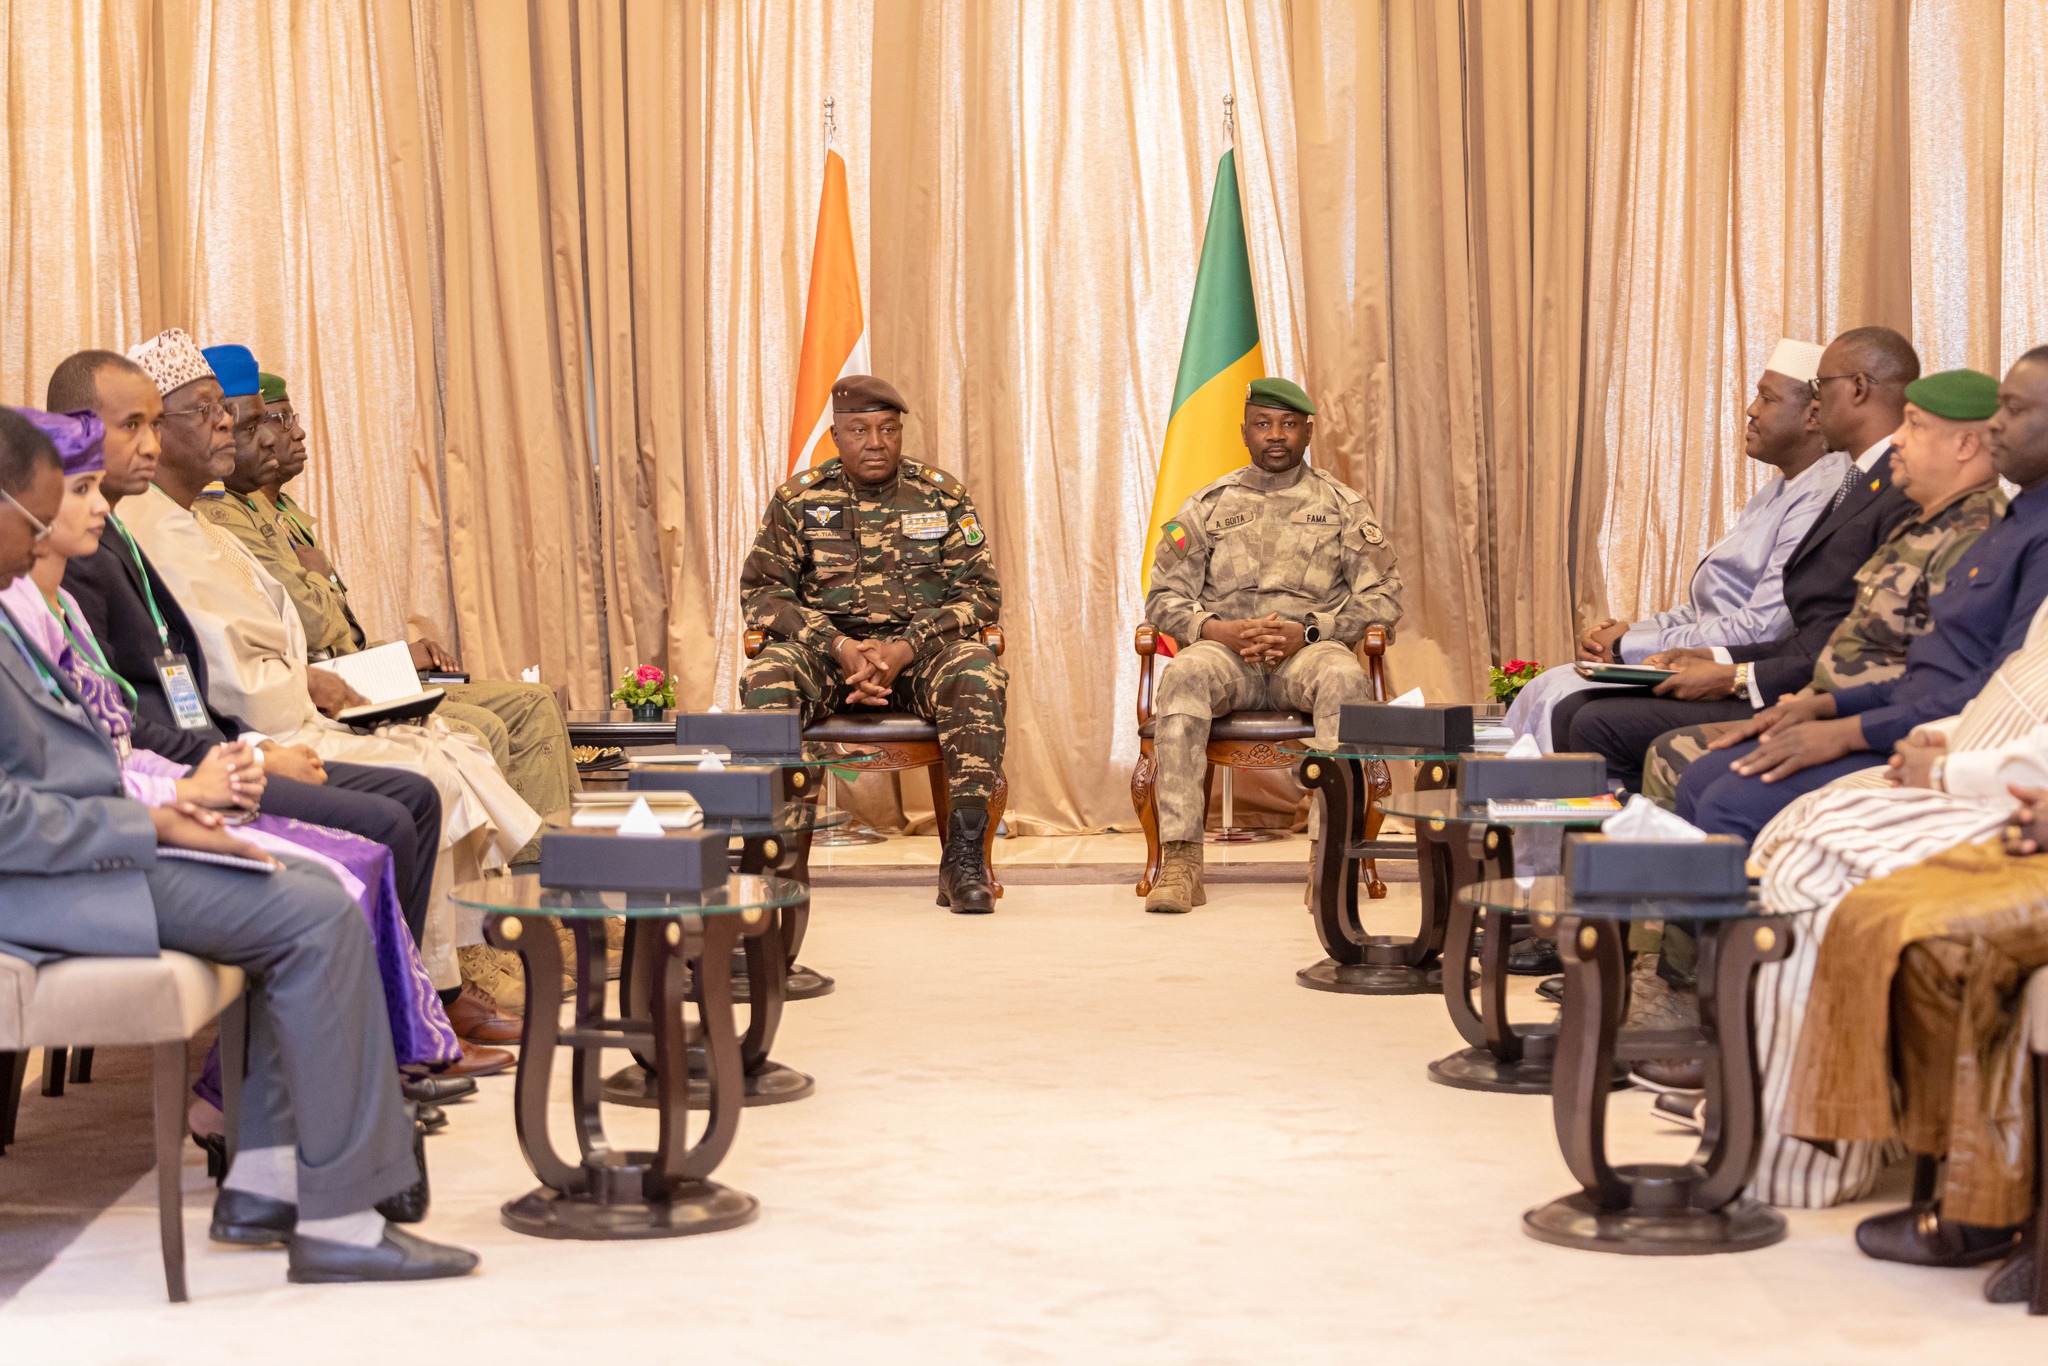 Le Général Tiani en visite diplomatique au Mali et au Burkina Faso